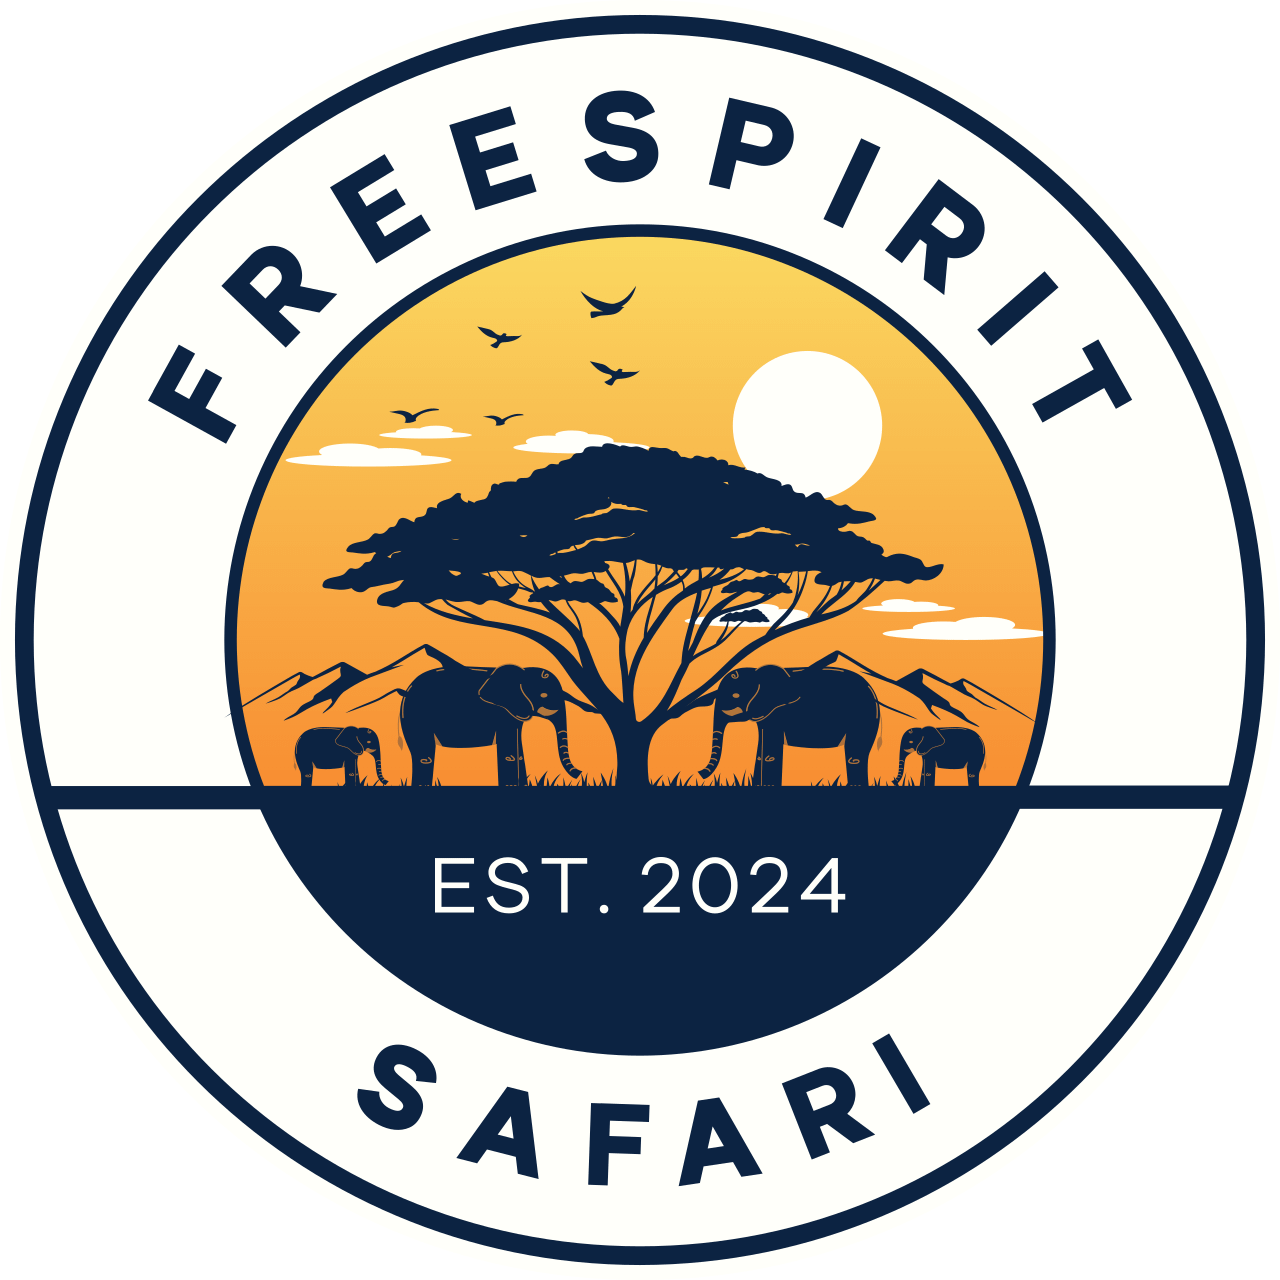 Free Spirit Safari